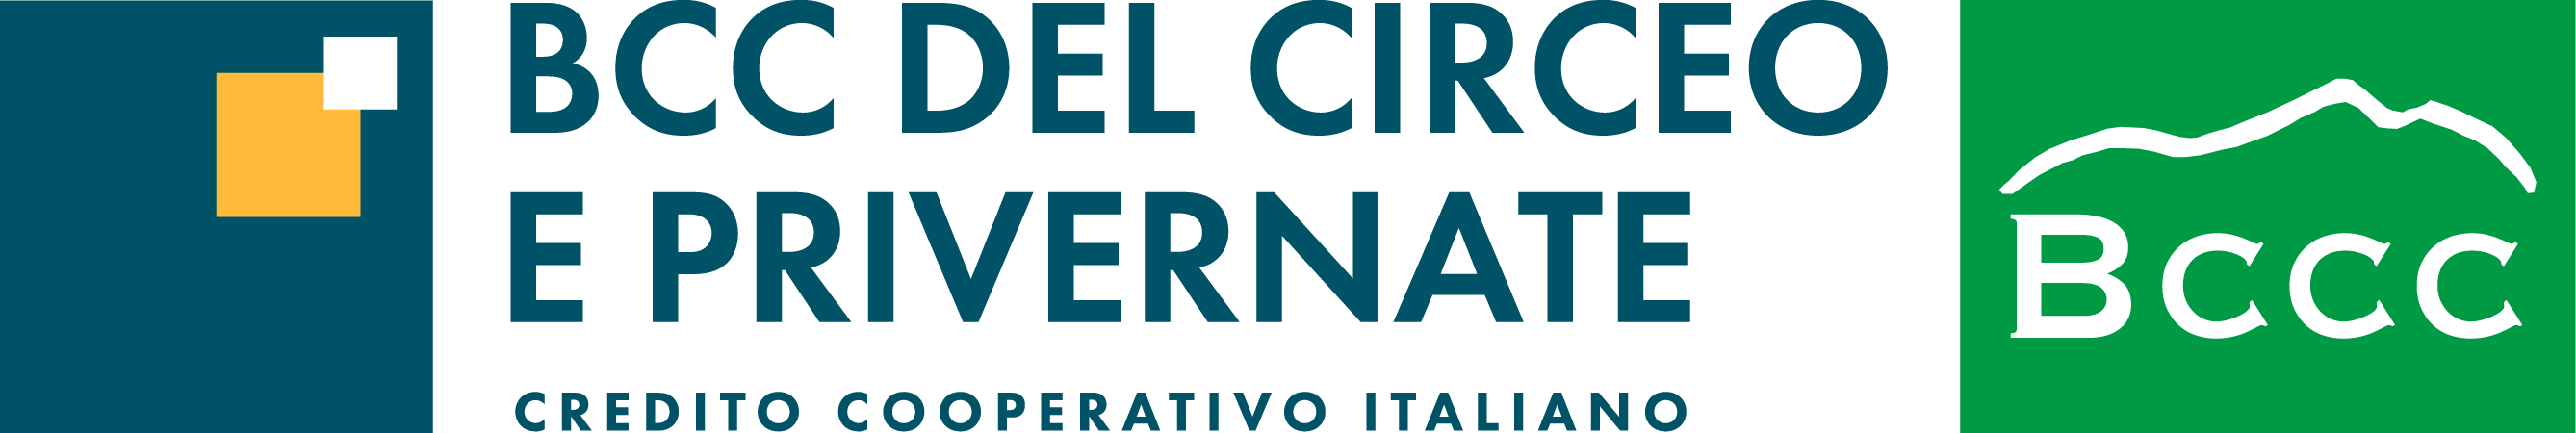 Logo BCC Circeo e Privernate